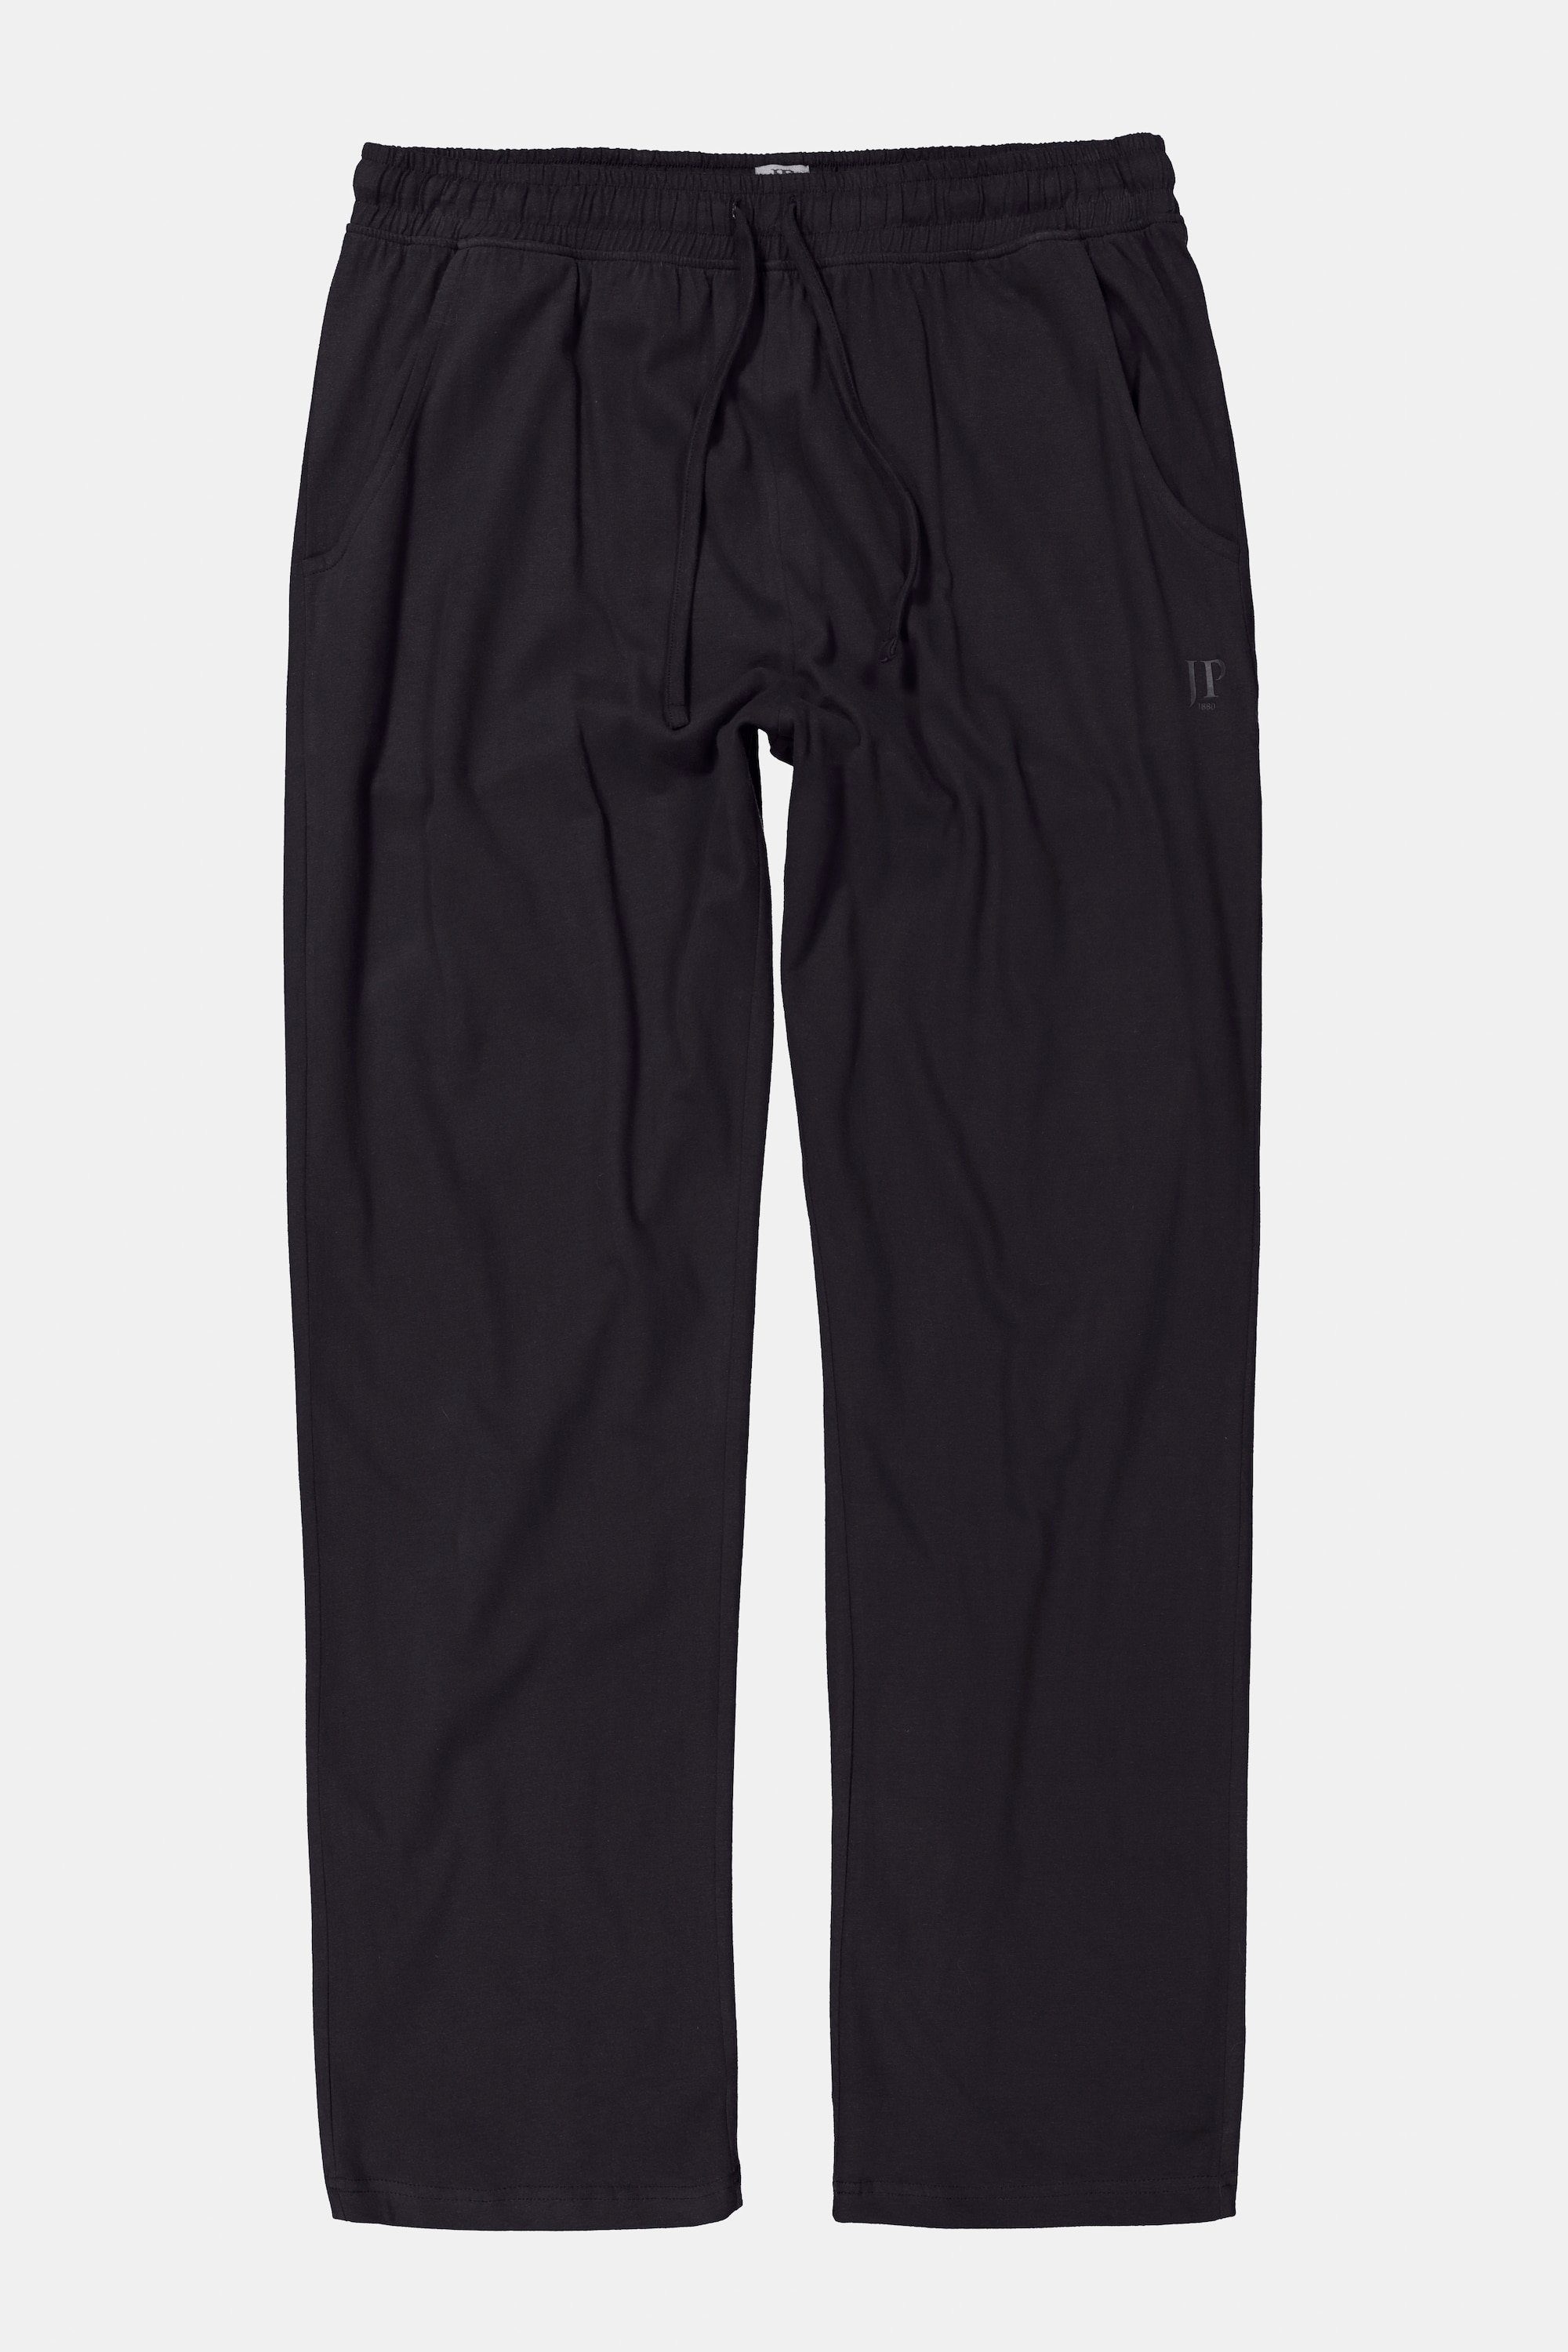 lange Schlafanzug-Hose Elastikbund Schlafanzug schwarz Form Homewear JP1880